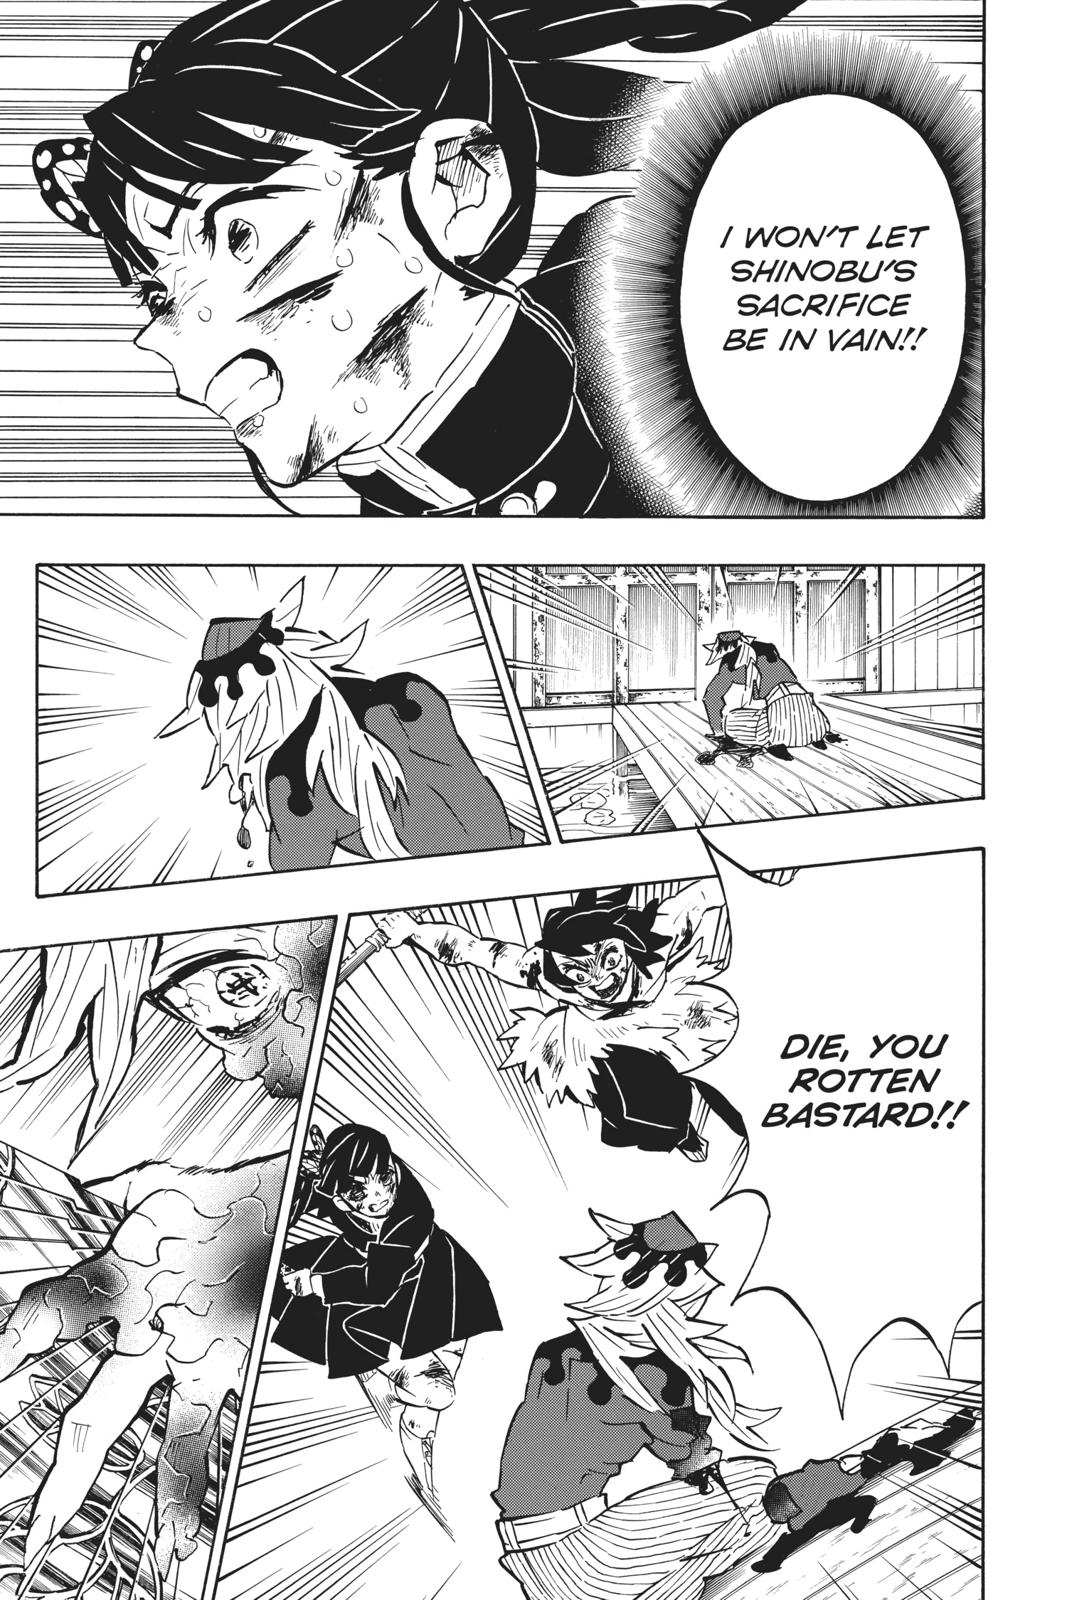 Demon Slayer Manga Manga Chapter - 162 - image 6